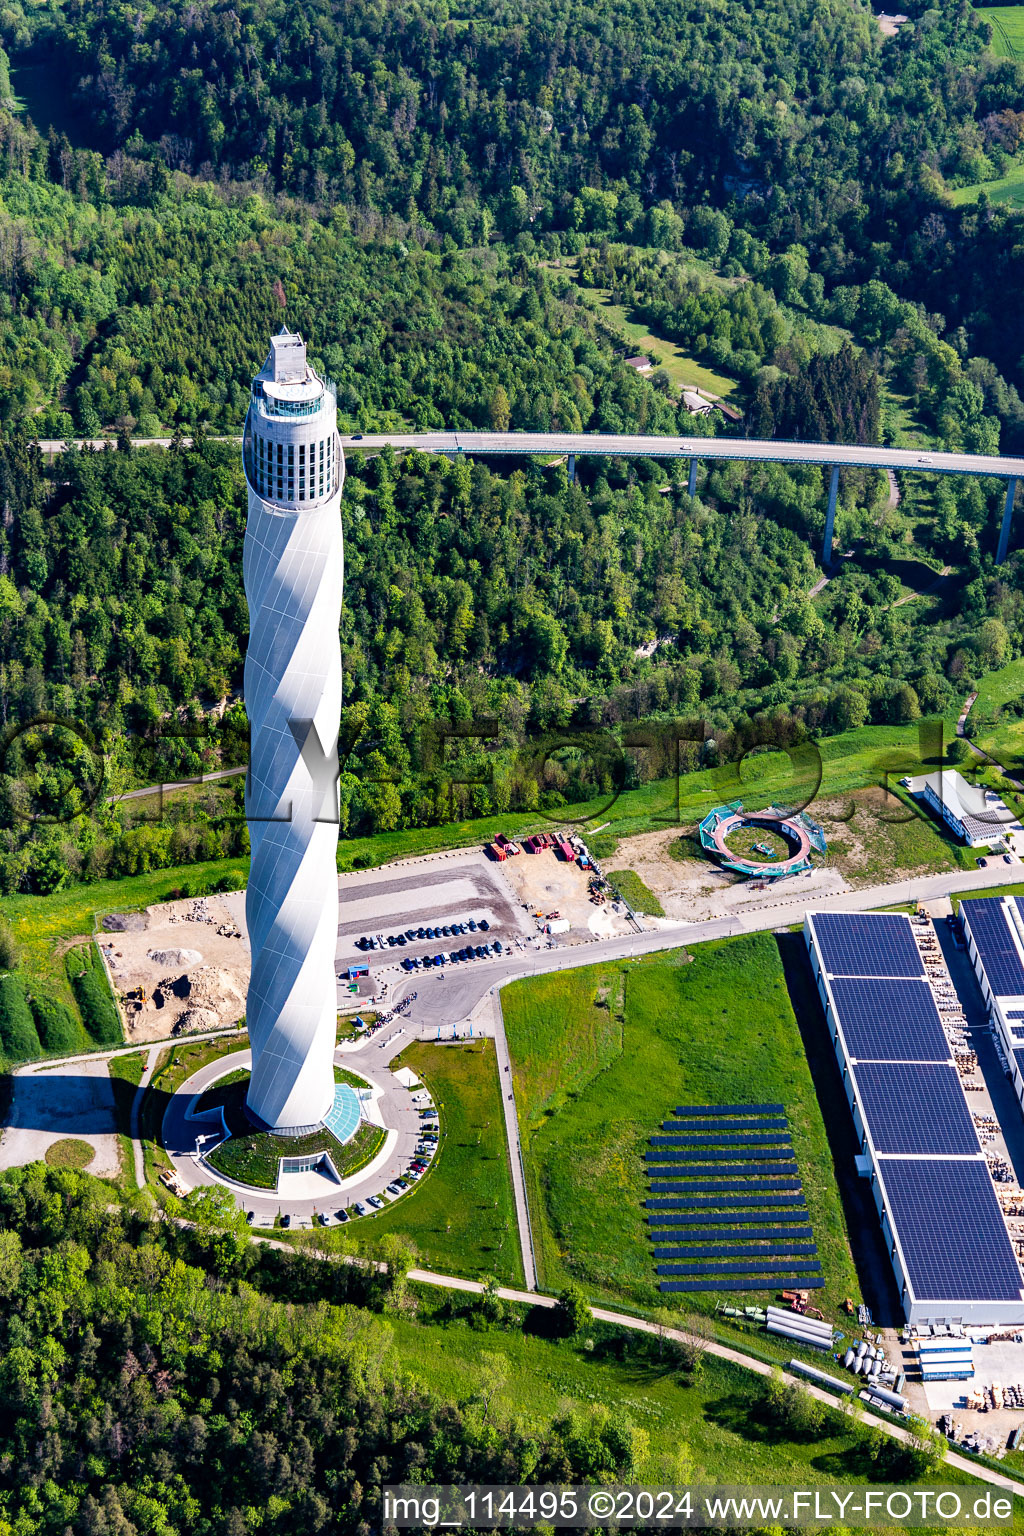 Turm thyssenkrupp Testturm für Expressaufzüge am Berner Feld in Rottweil. Das neue Wahrzeichen der Kleinstadt Rottweil ist derzeit höchstes Bauwerk in Baden-Württemberg, Deutschland von oben gesehen